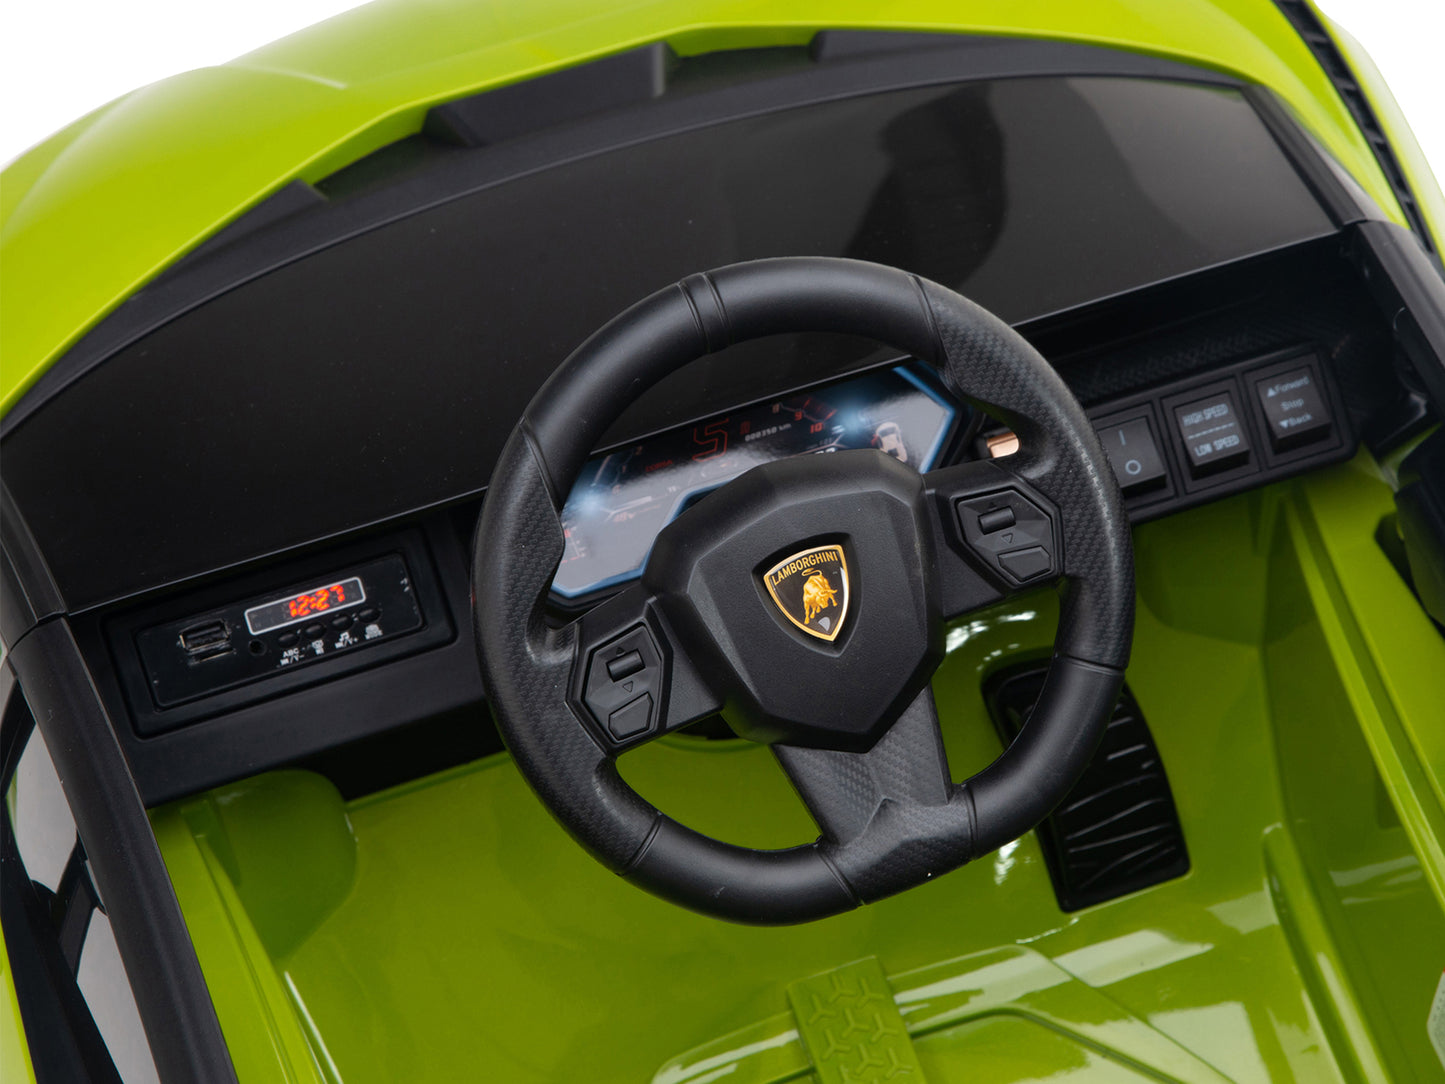 Lamborghini Sian 12V Kids Ride On Car with Remote Control - Green